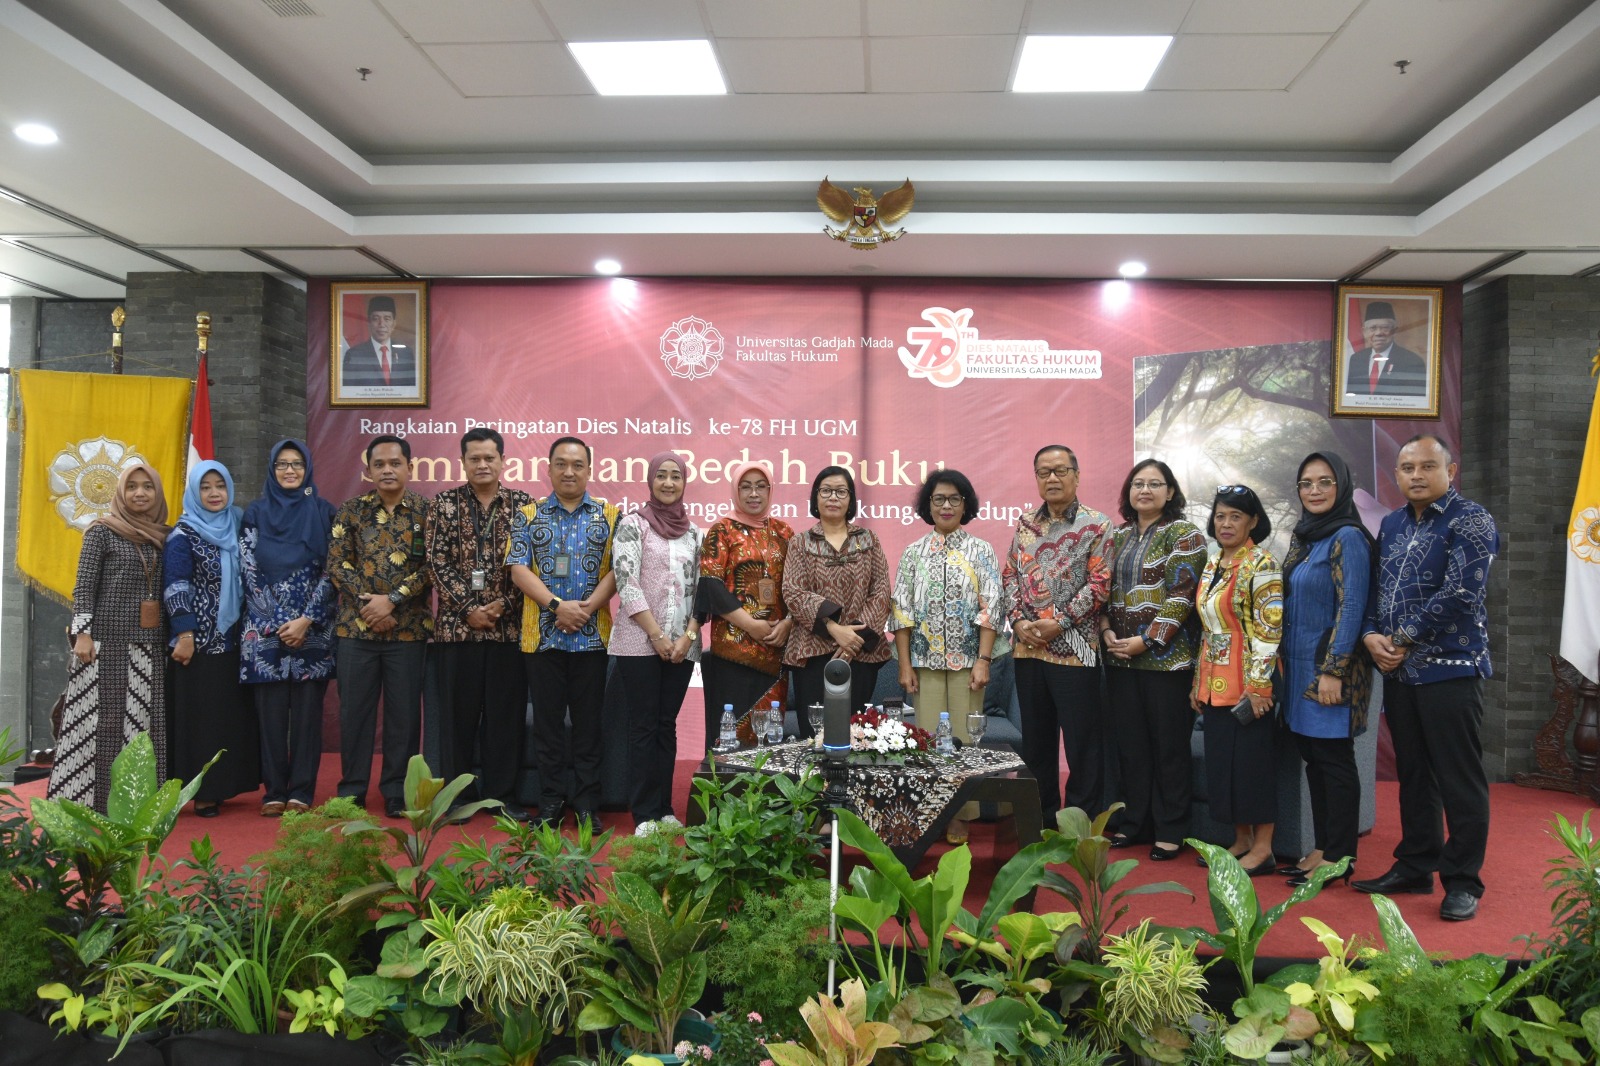 Ketua Pengadilan Negeri Yogyakarta Menghadiri Seminar dan Bedah Buku Dies Natalis FH UGM ke-78